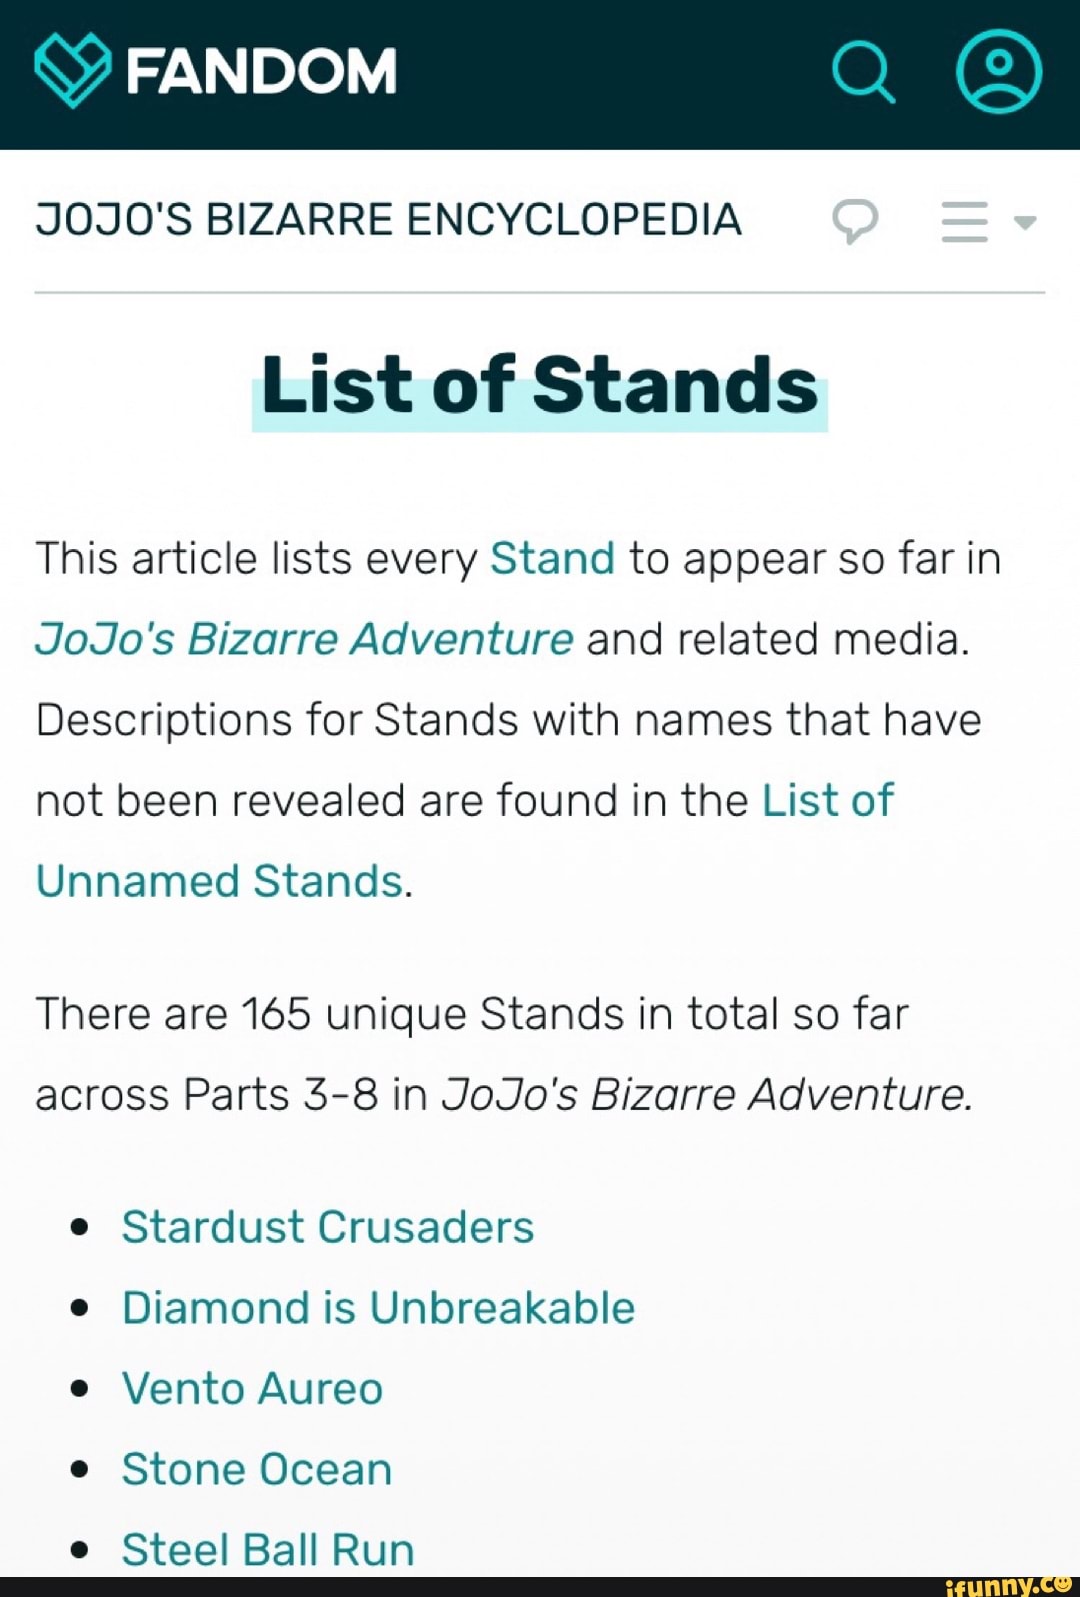 Stardust Crusaders - JoJo's Bizarre Encyclopedia